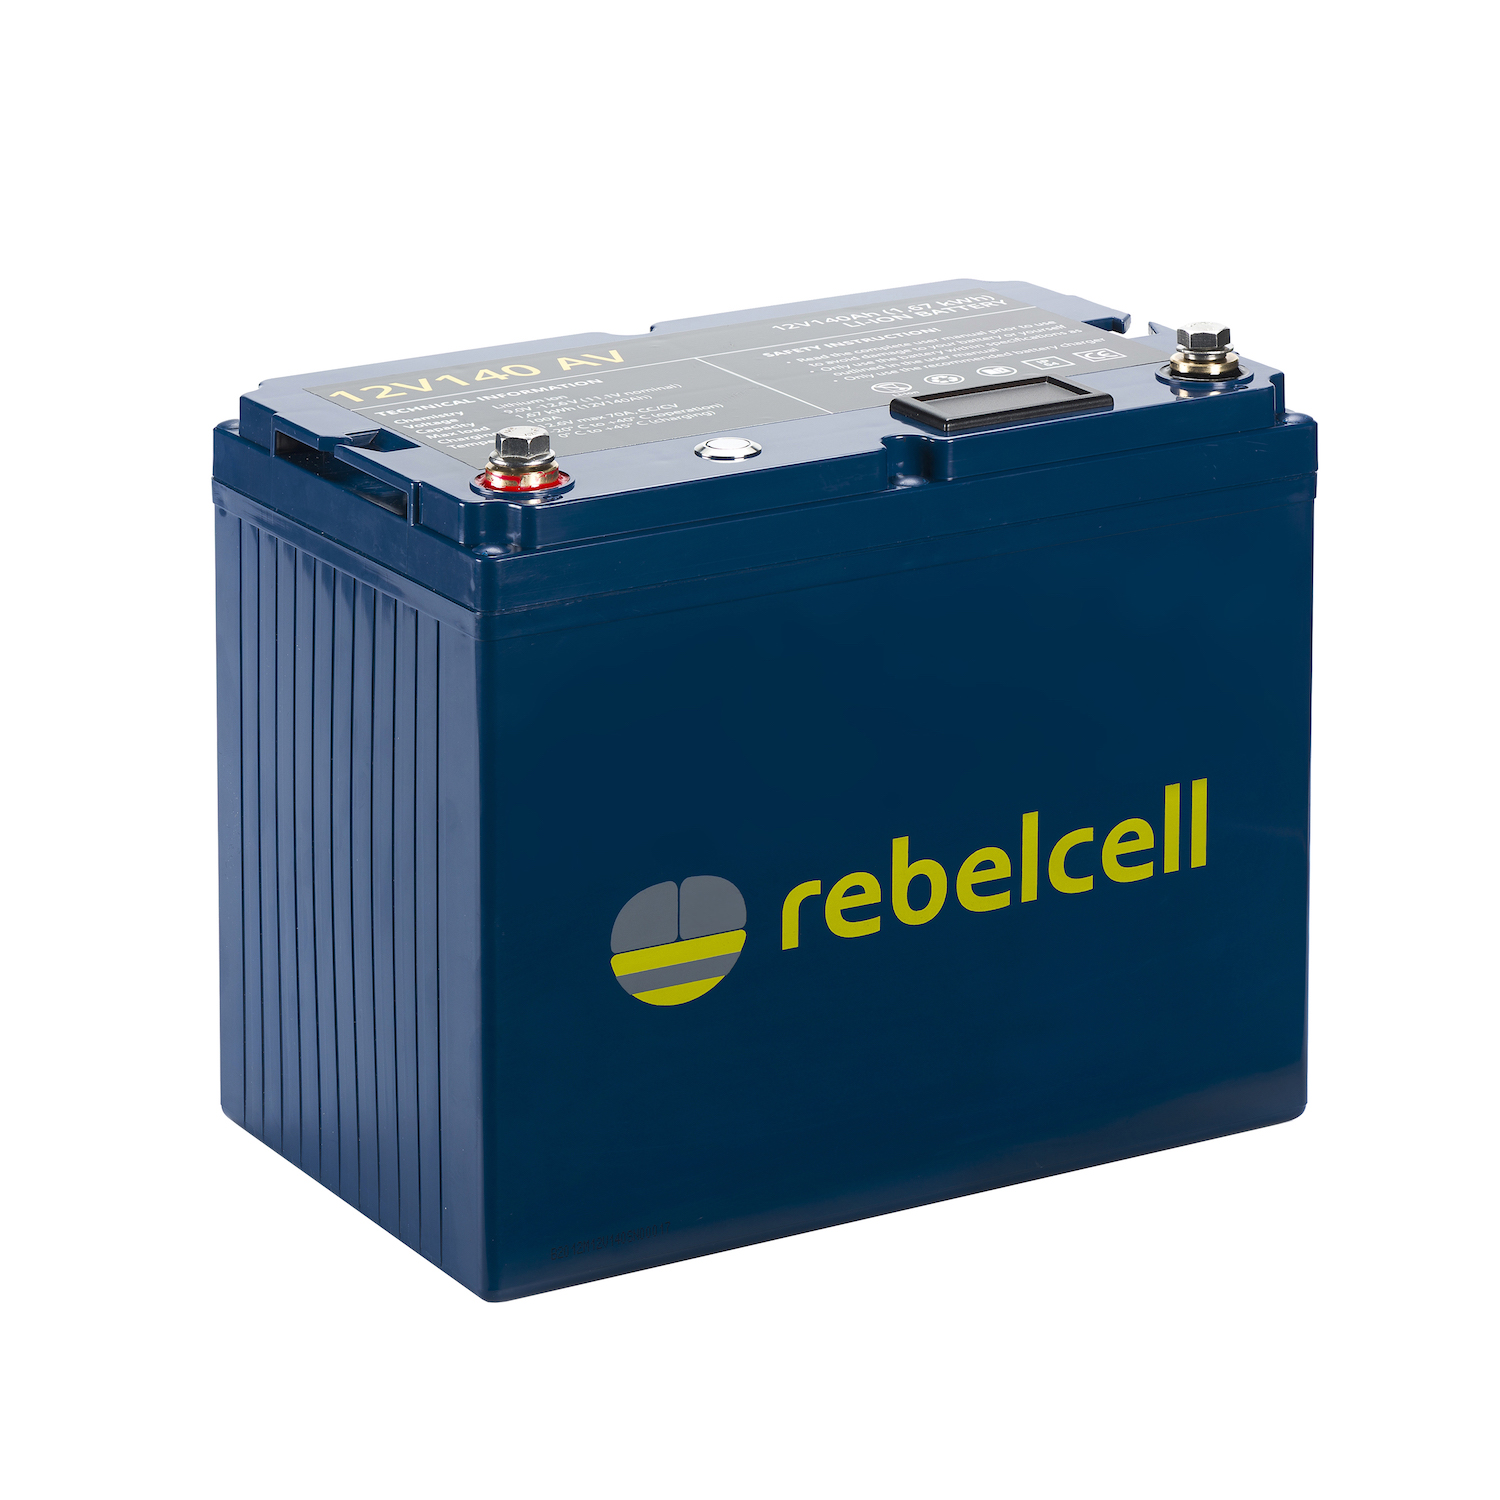 12V140 AV lithium battery, Rebelcell